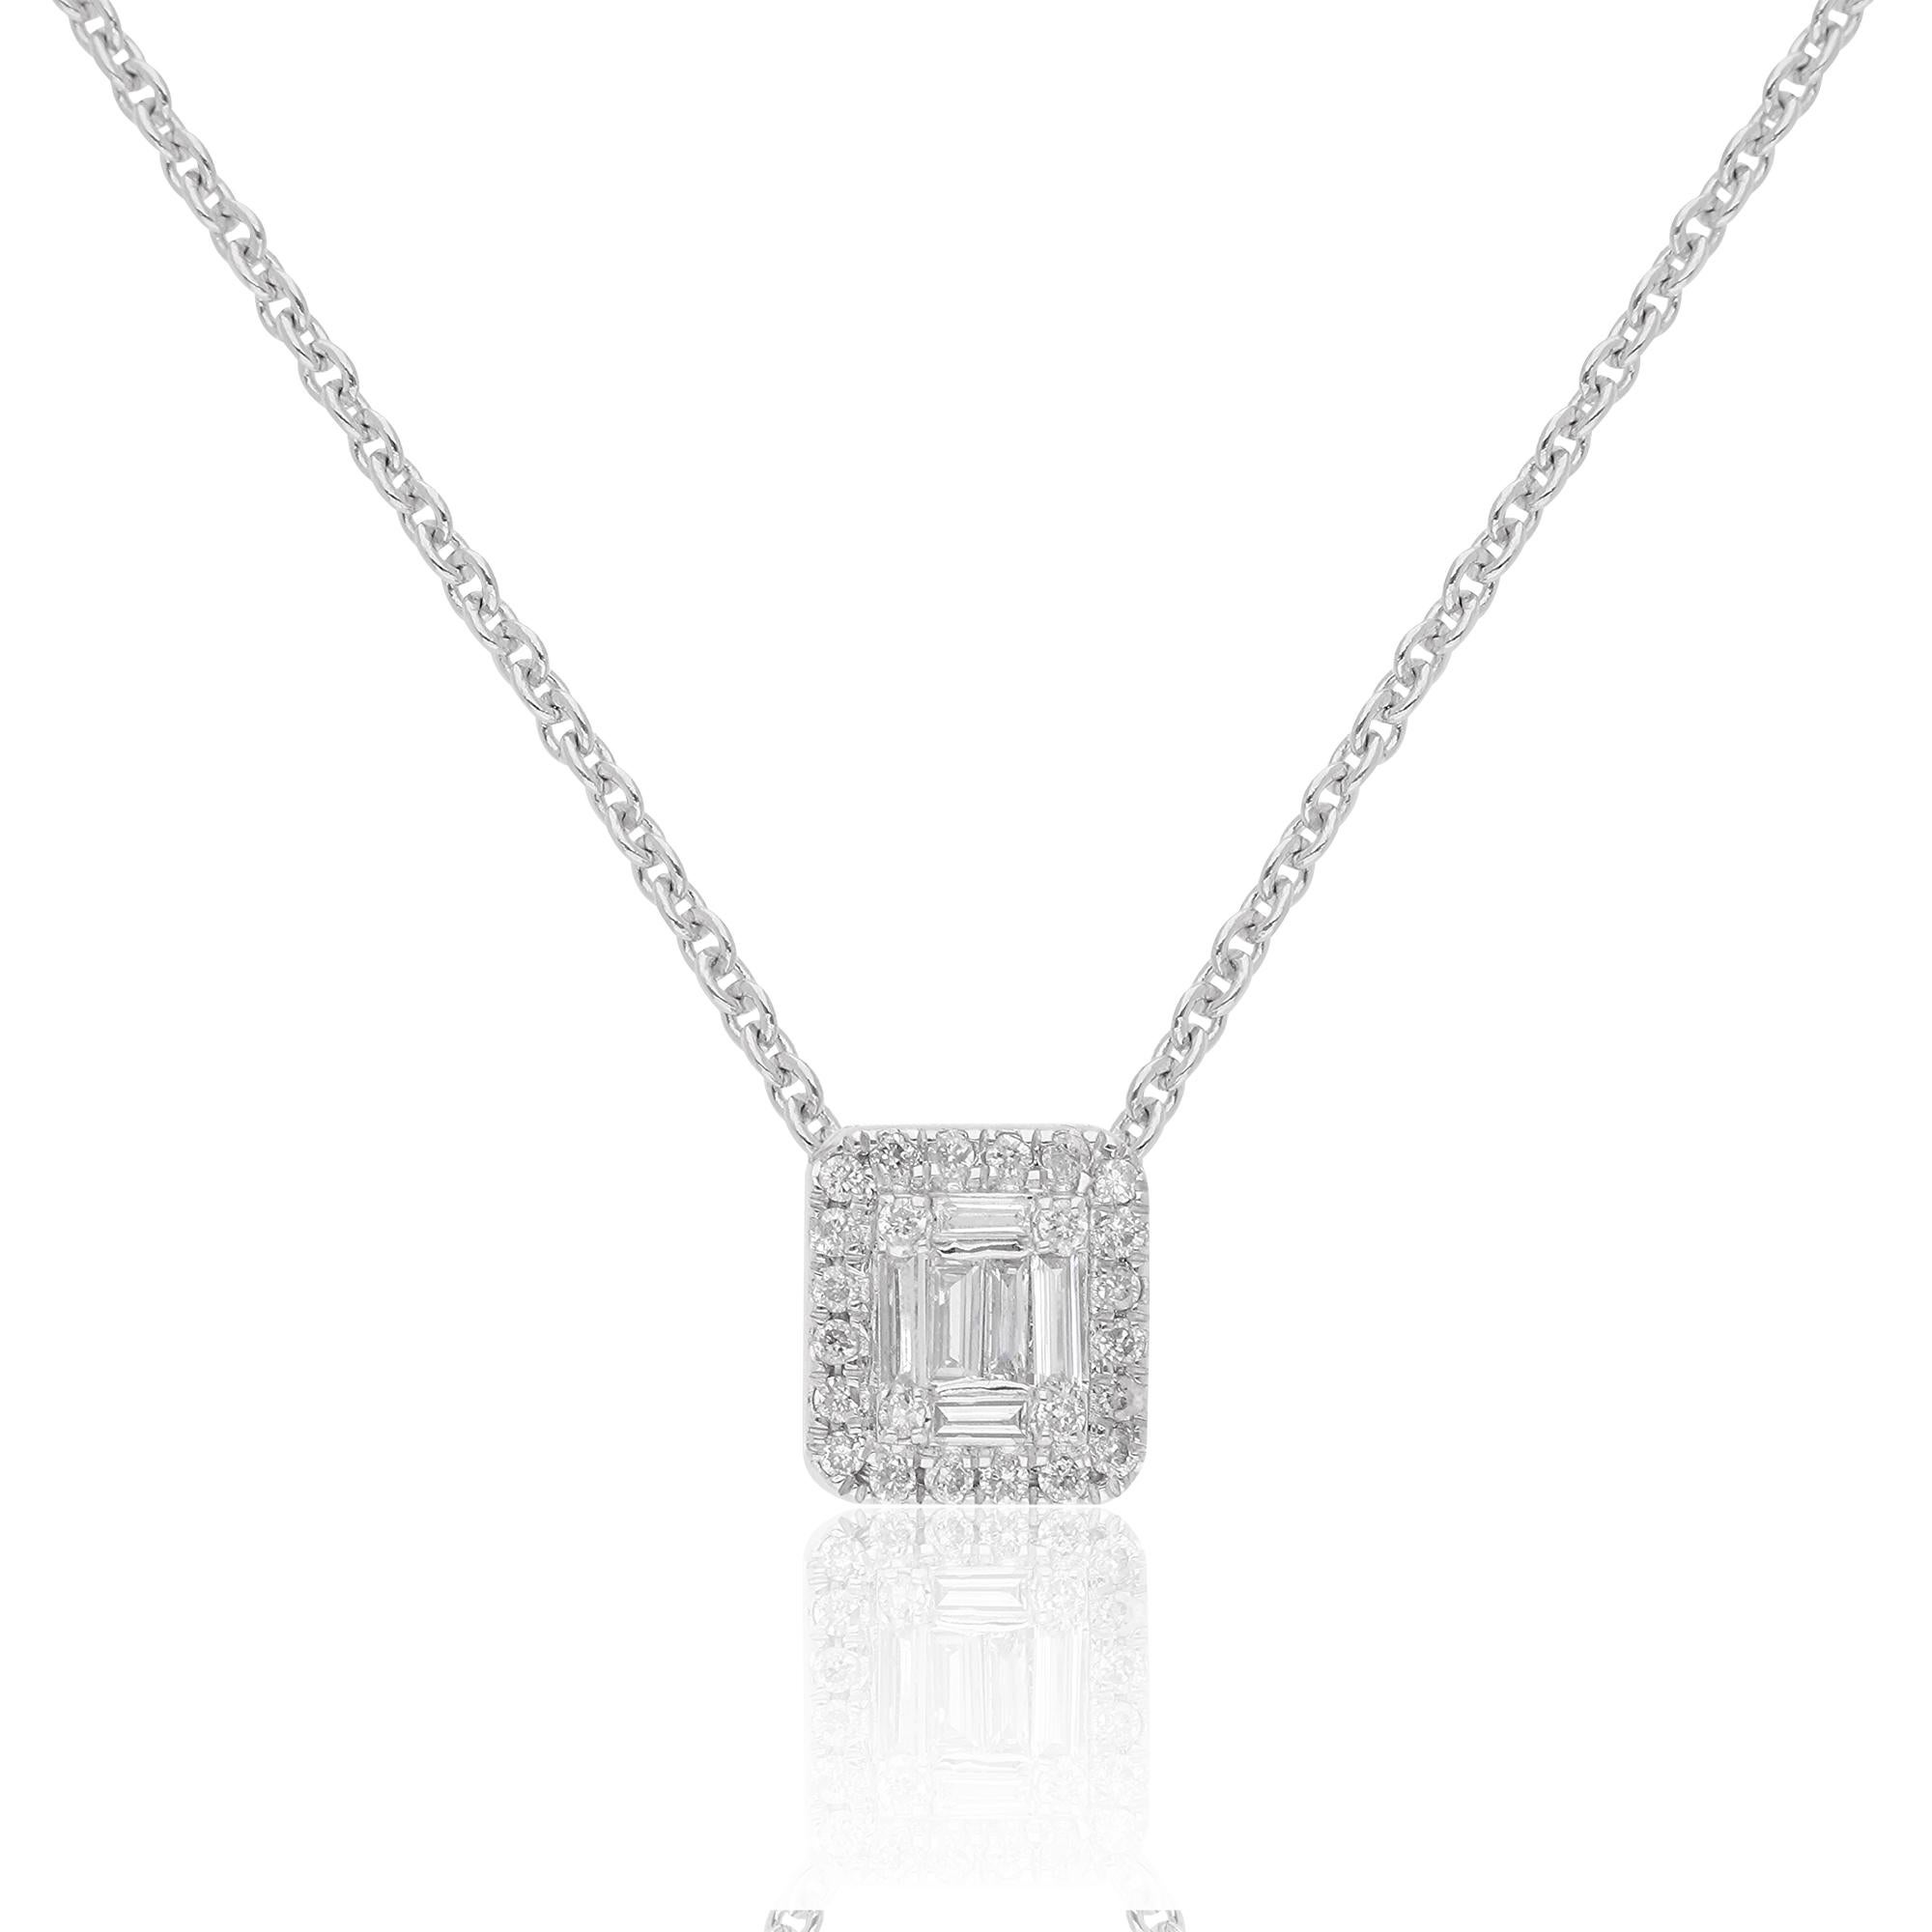 Artikel-Code :- CN-16940
Bruttogewicht :- 3.98 gm
18k Weißgold Gewicht :- 3,90 gm
Natürlicher Diamant Gewicht :- 0.40 Ct. ( DURCHSCHNITTLICHE DIAMANT-REINHEIT SI1-SI2 & FARBE H-I )
Halskette Länge :- 16 Zoll lang

✦